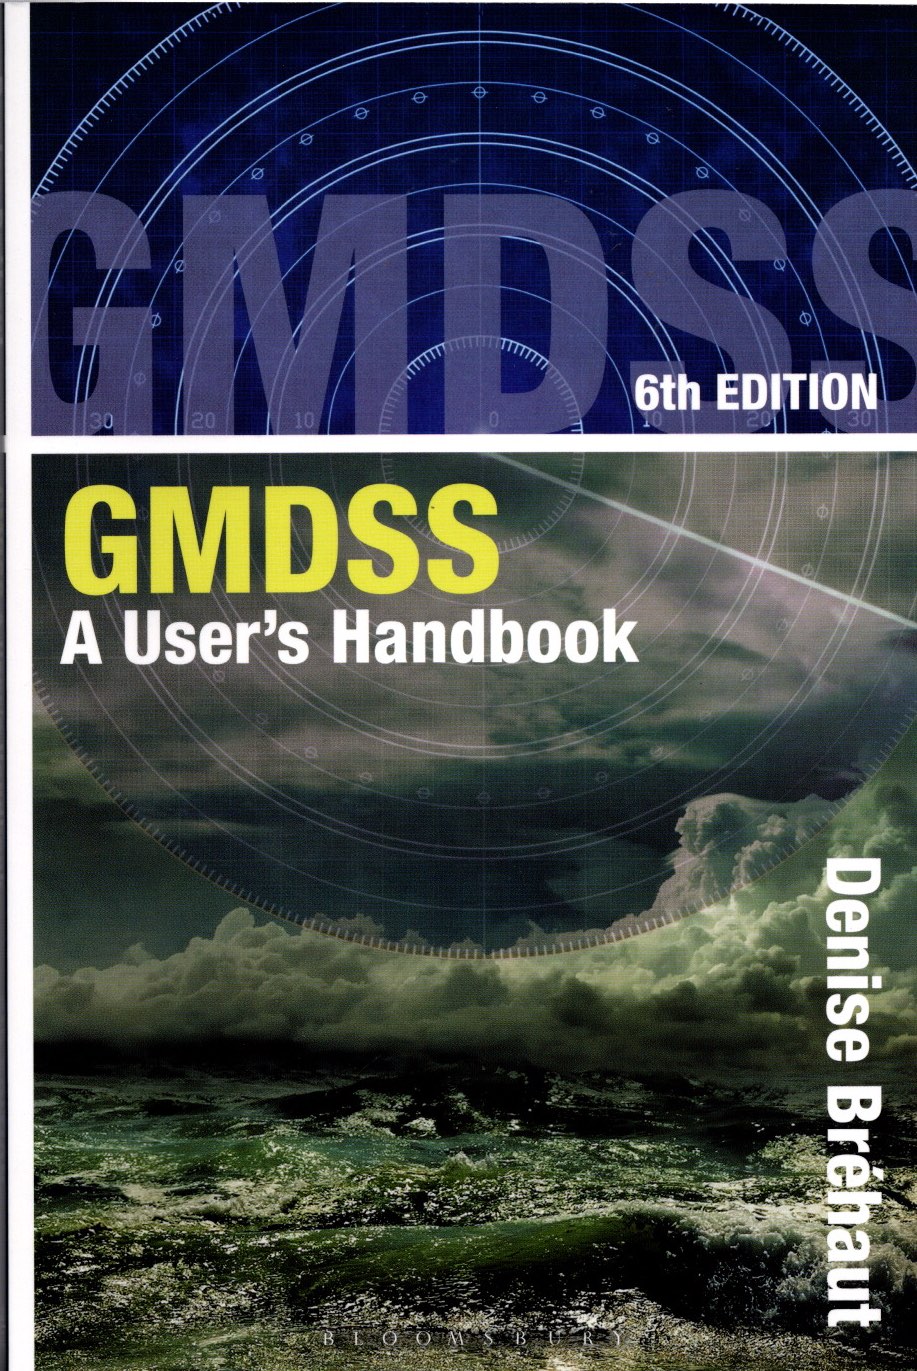 Gmdss - A user's handbook